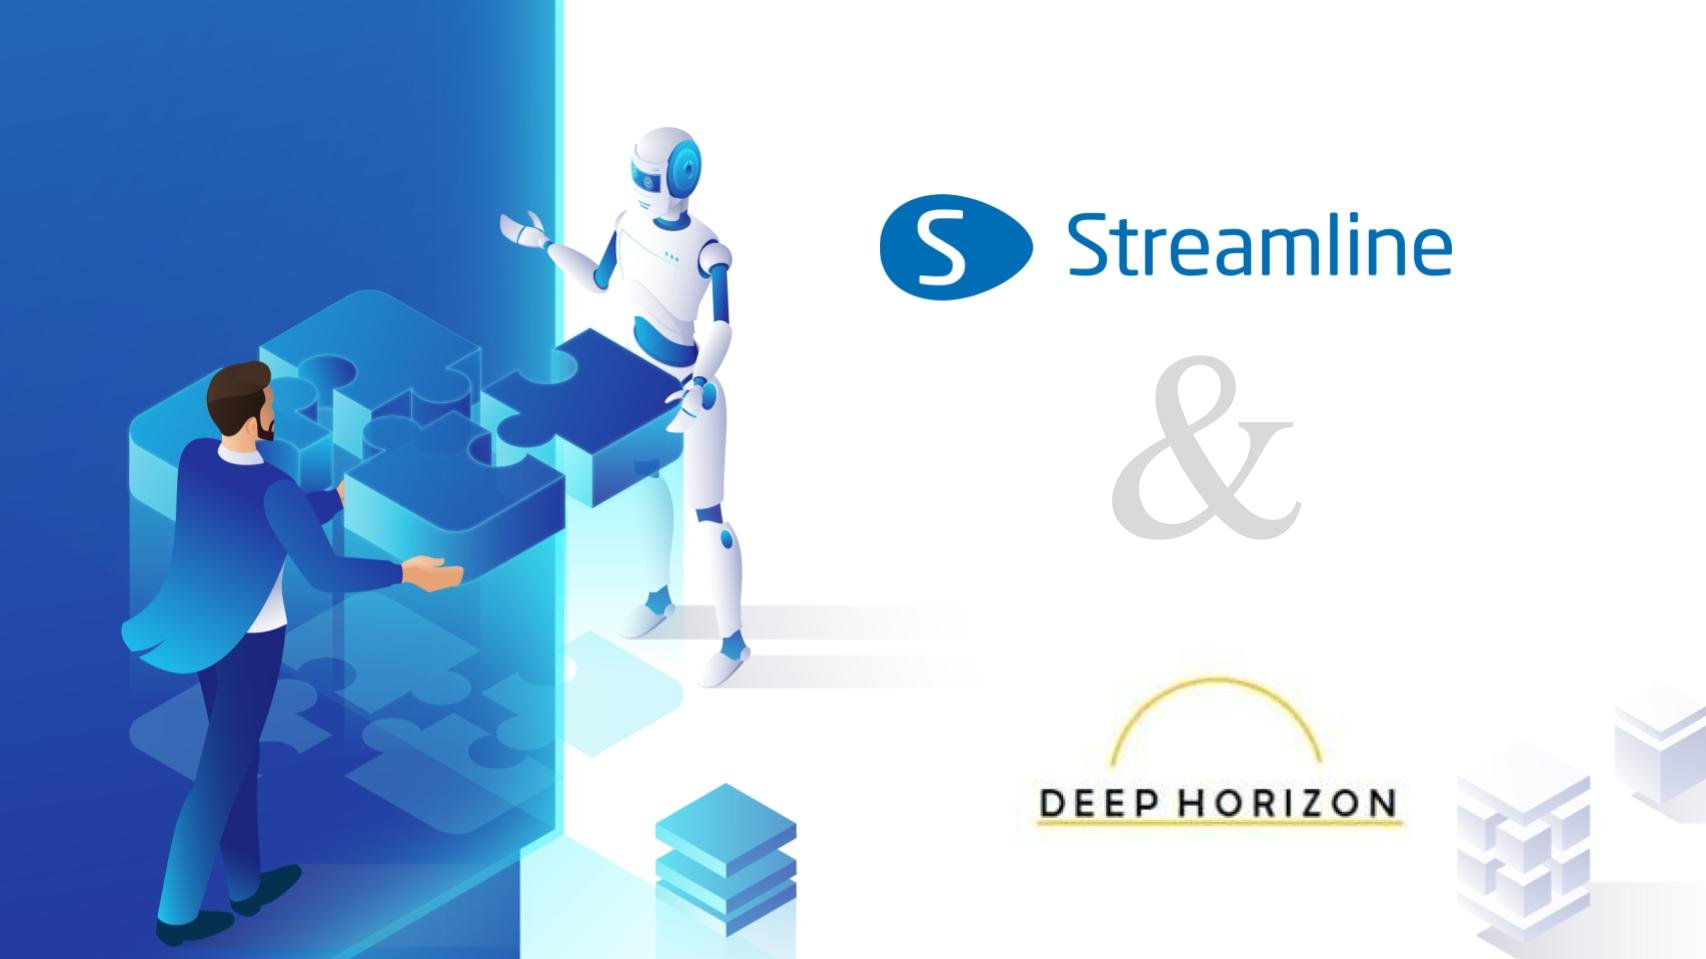 GMDH Streamline hợp tác với Giải pháp Deep Horizon để nâng cao khả năng phục hồi của chuỗi cung ứng